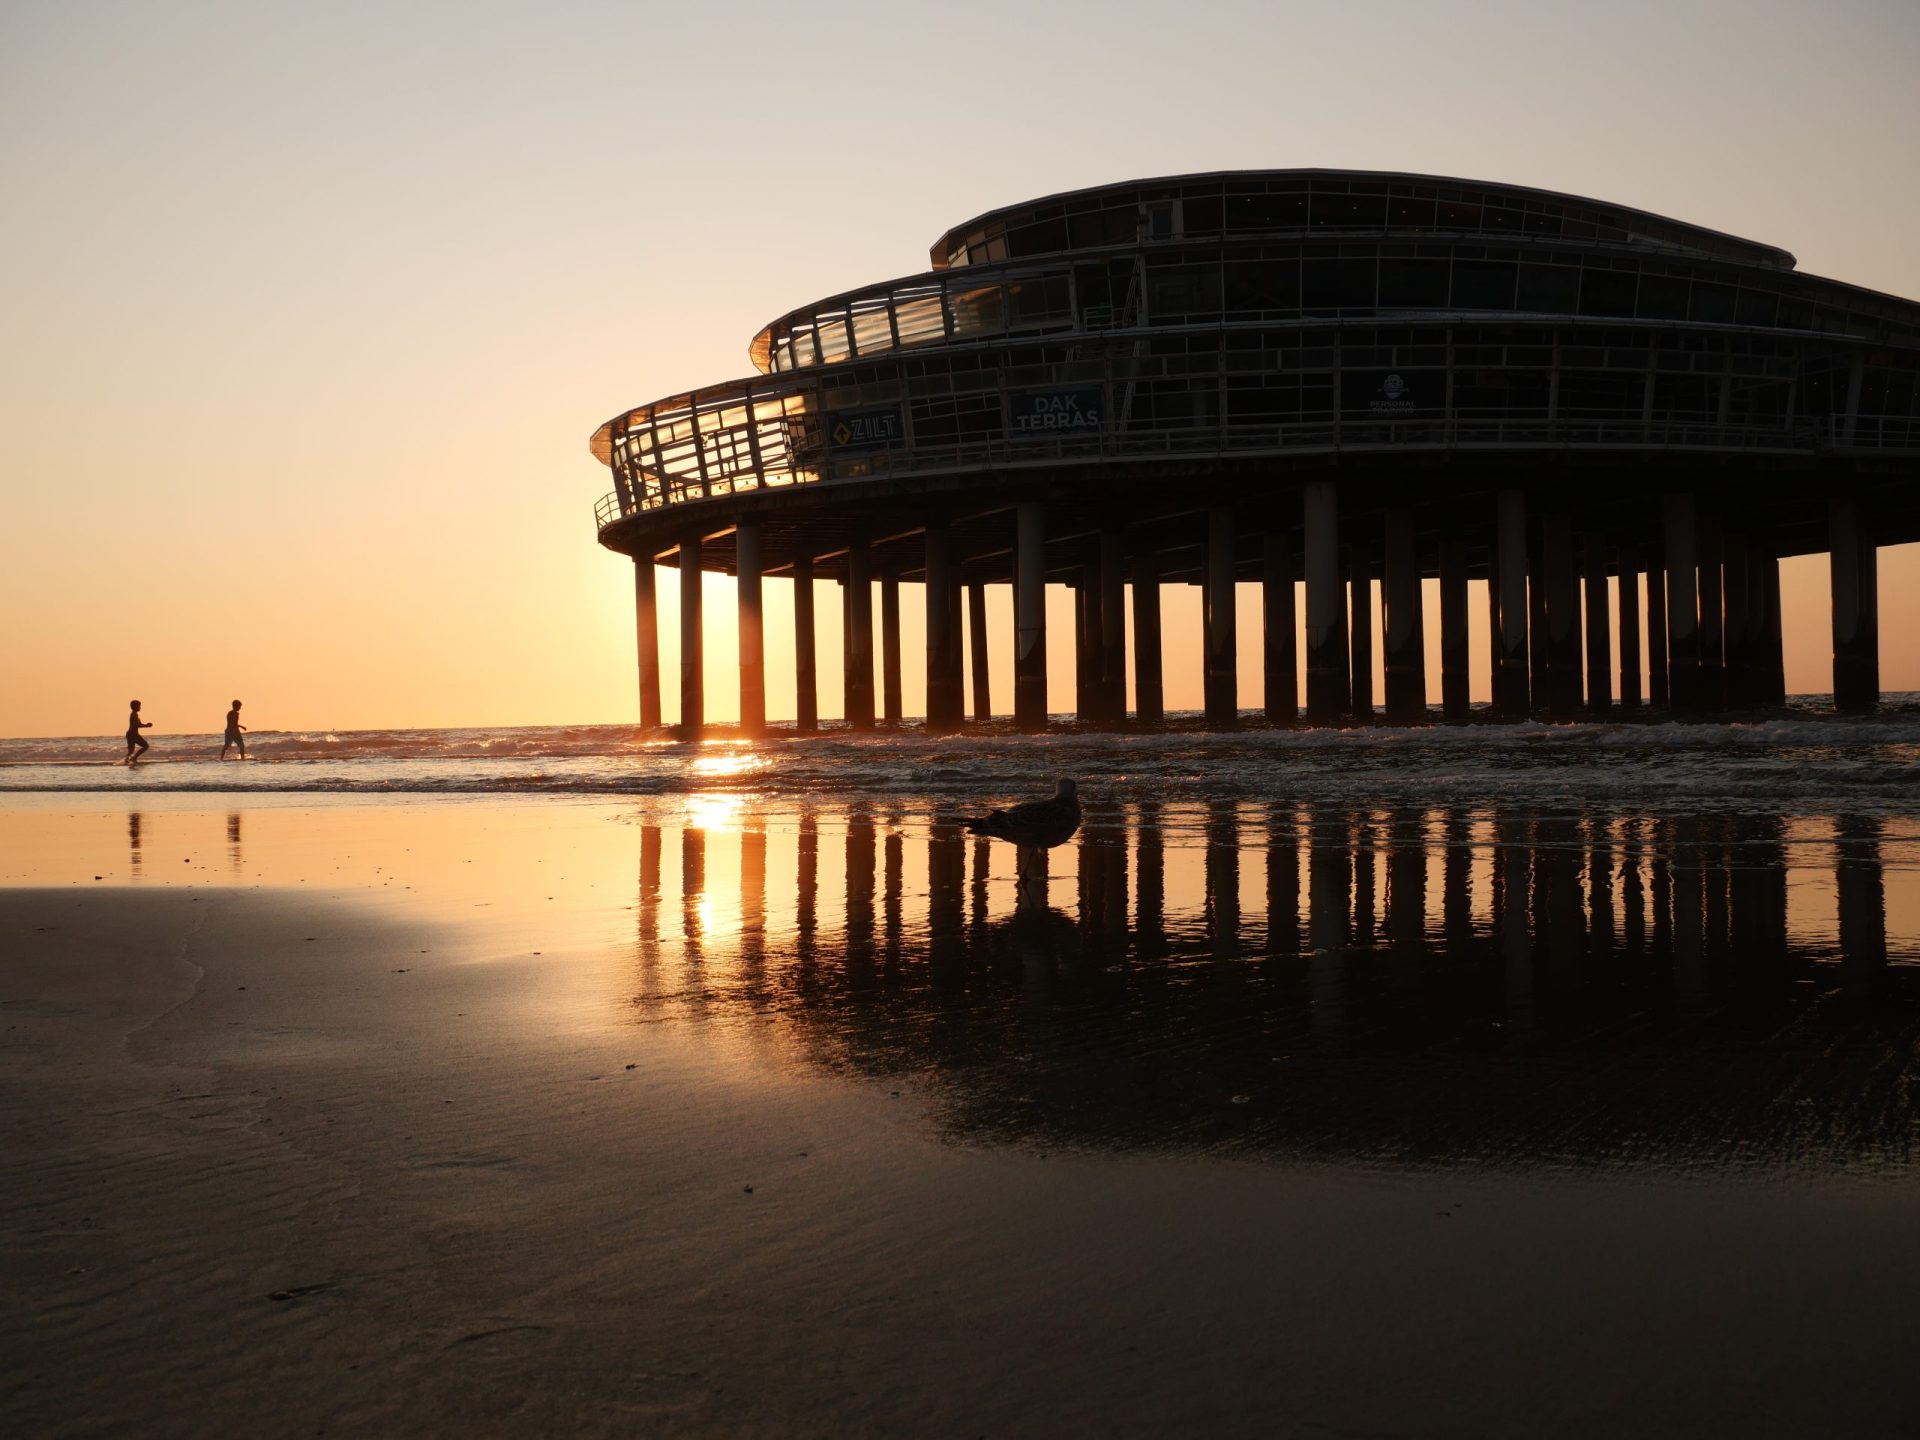 100 mooie plekken in Nederland om te bezoeken De Pier Scheveningen ondergaande zon